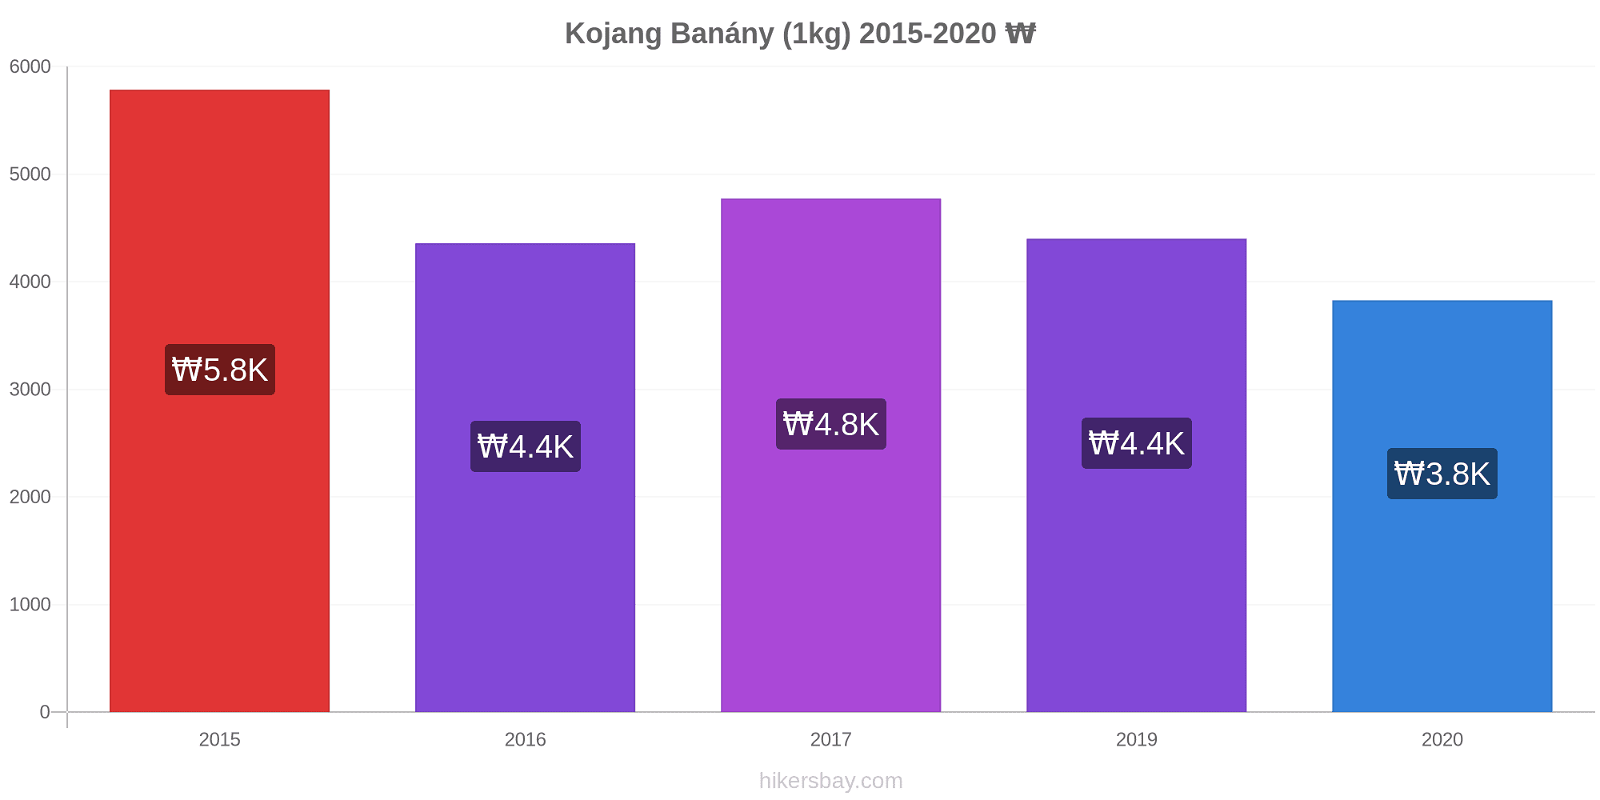 Kojang změny cen Banány (1kg) hikersbay.com